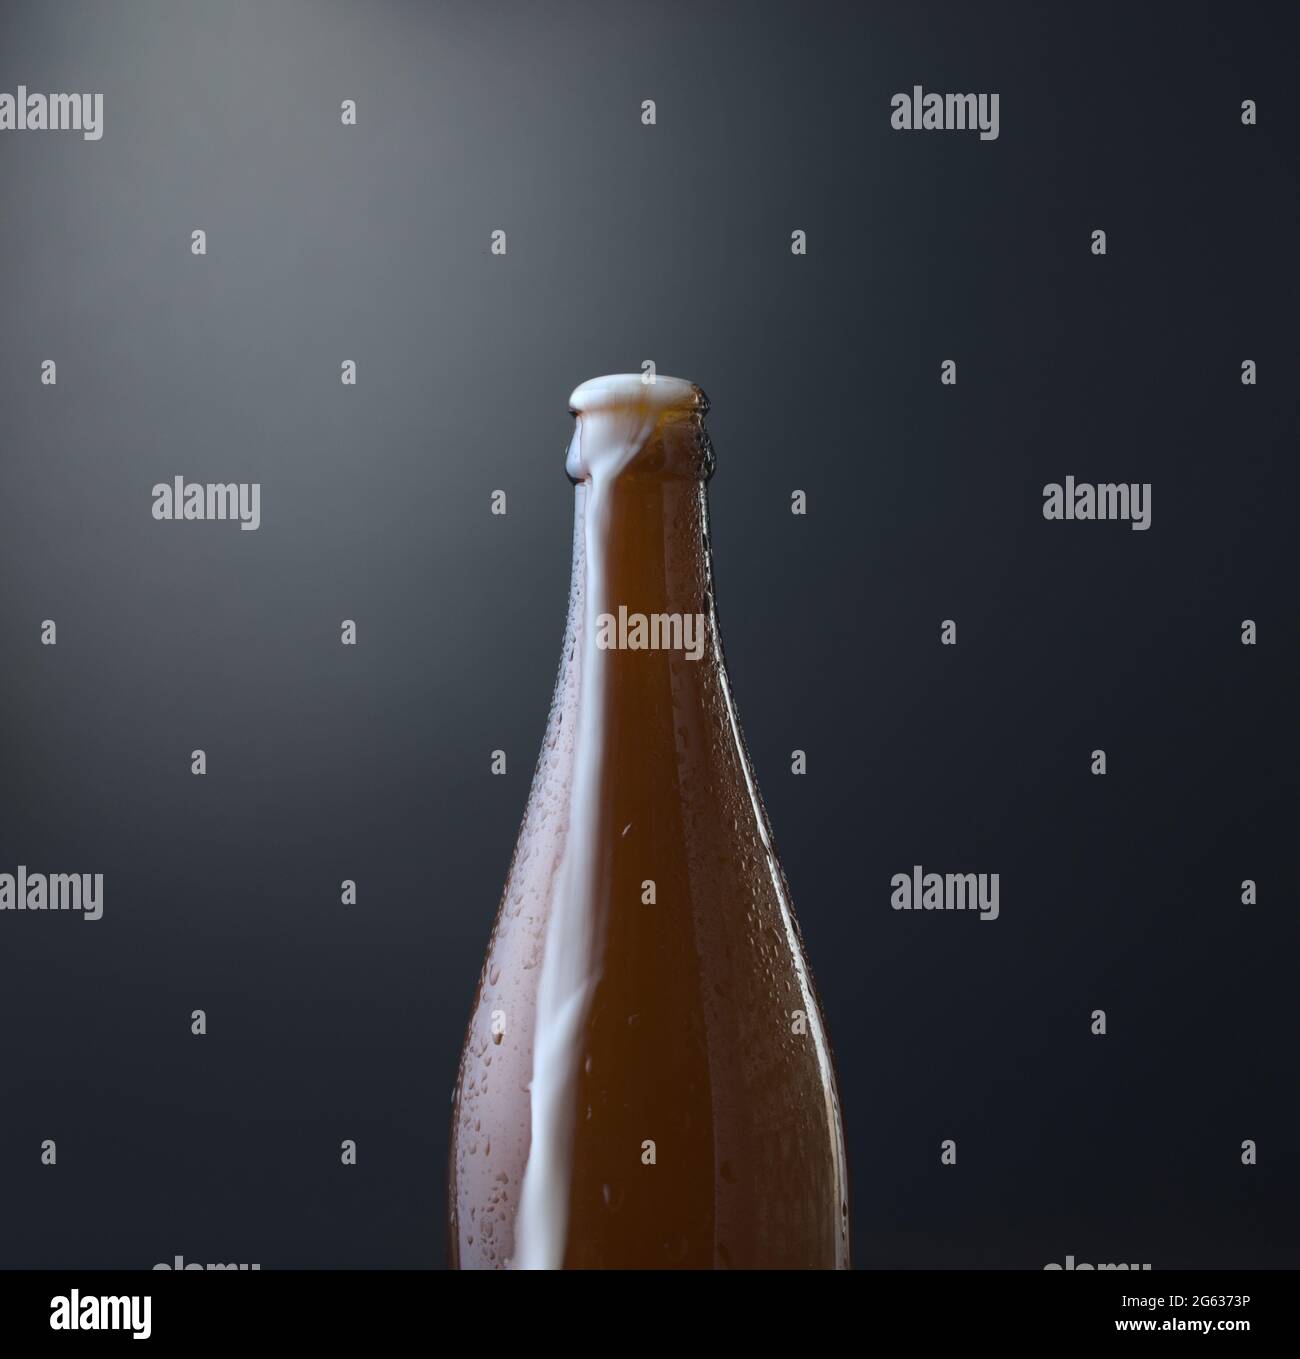 Vorderansicht einer Flasche kaltes Bier mit überlauftem Schaum vor dunkelblauem Grunge-Hintergrund. Kaltes alkoholisches Getränk, internationales Biertagskonzept. Stockfoto